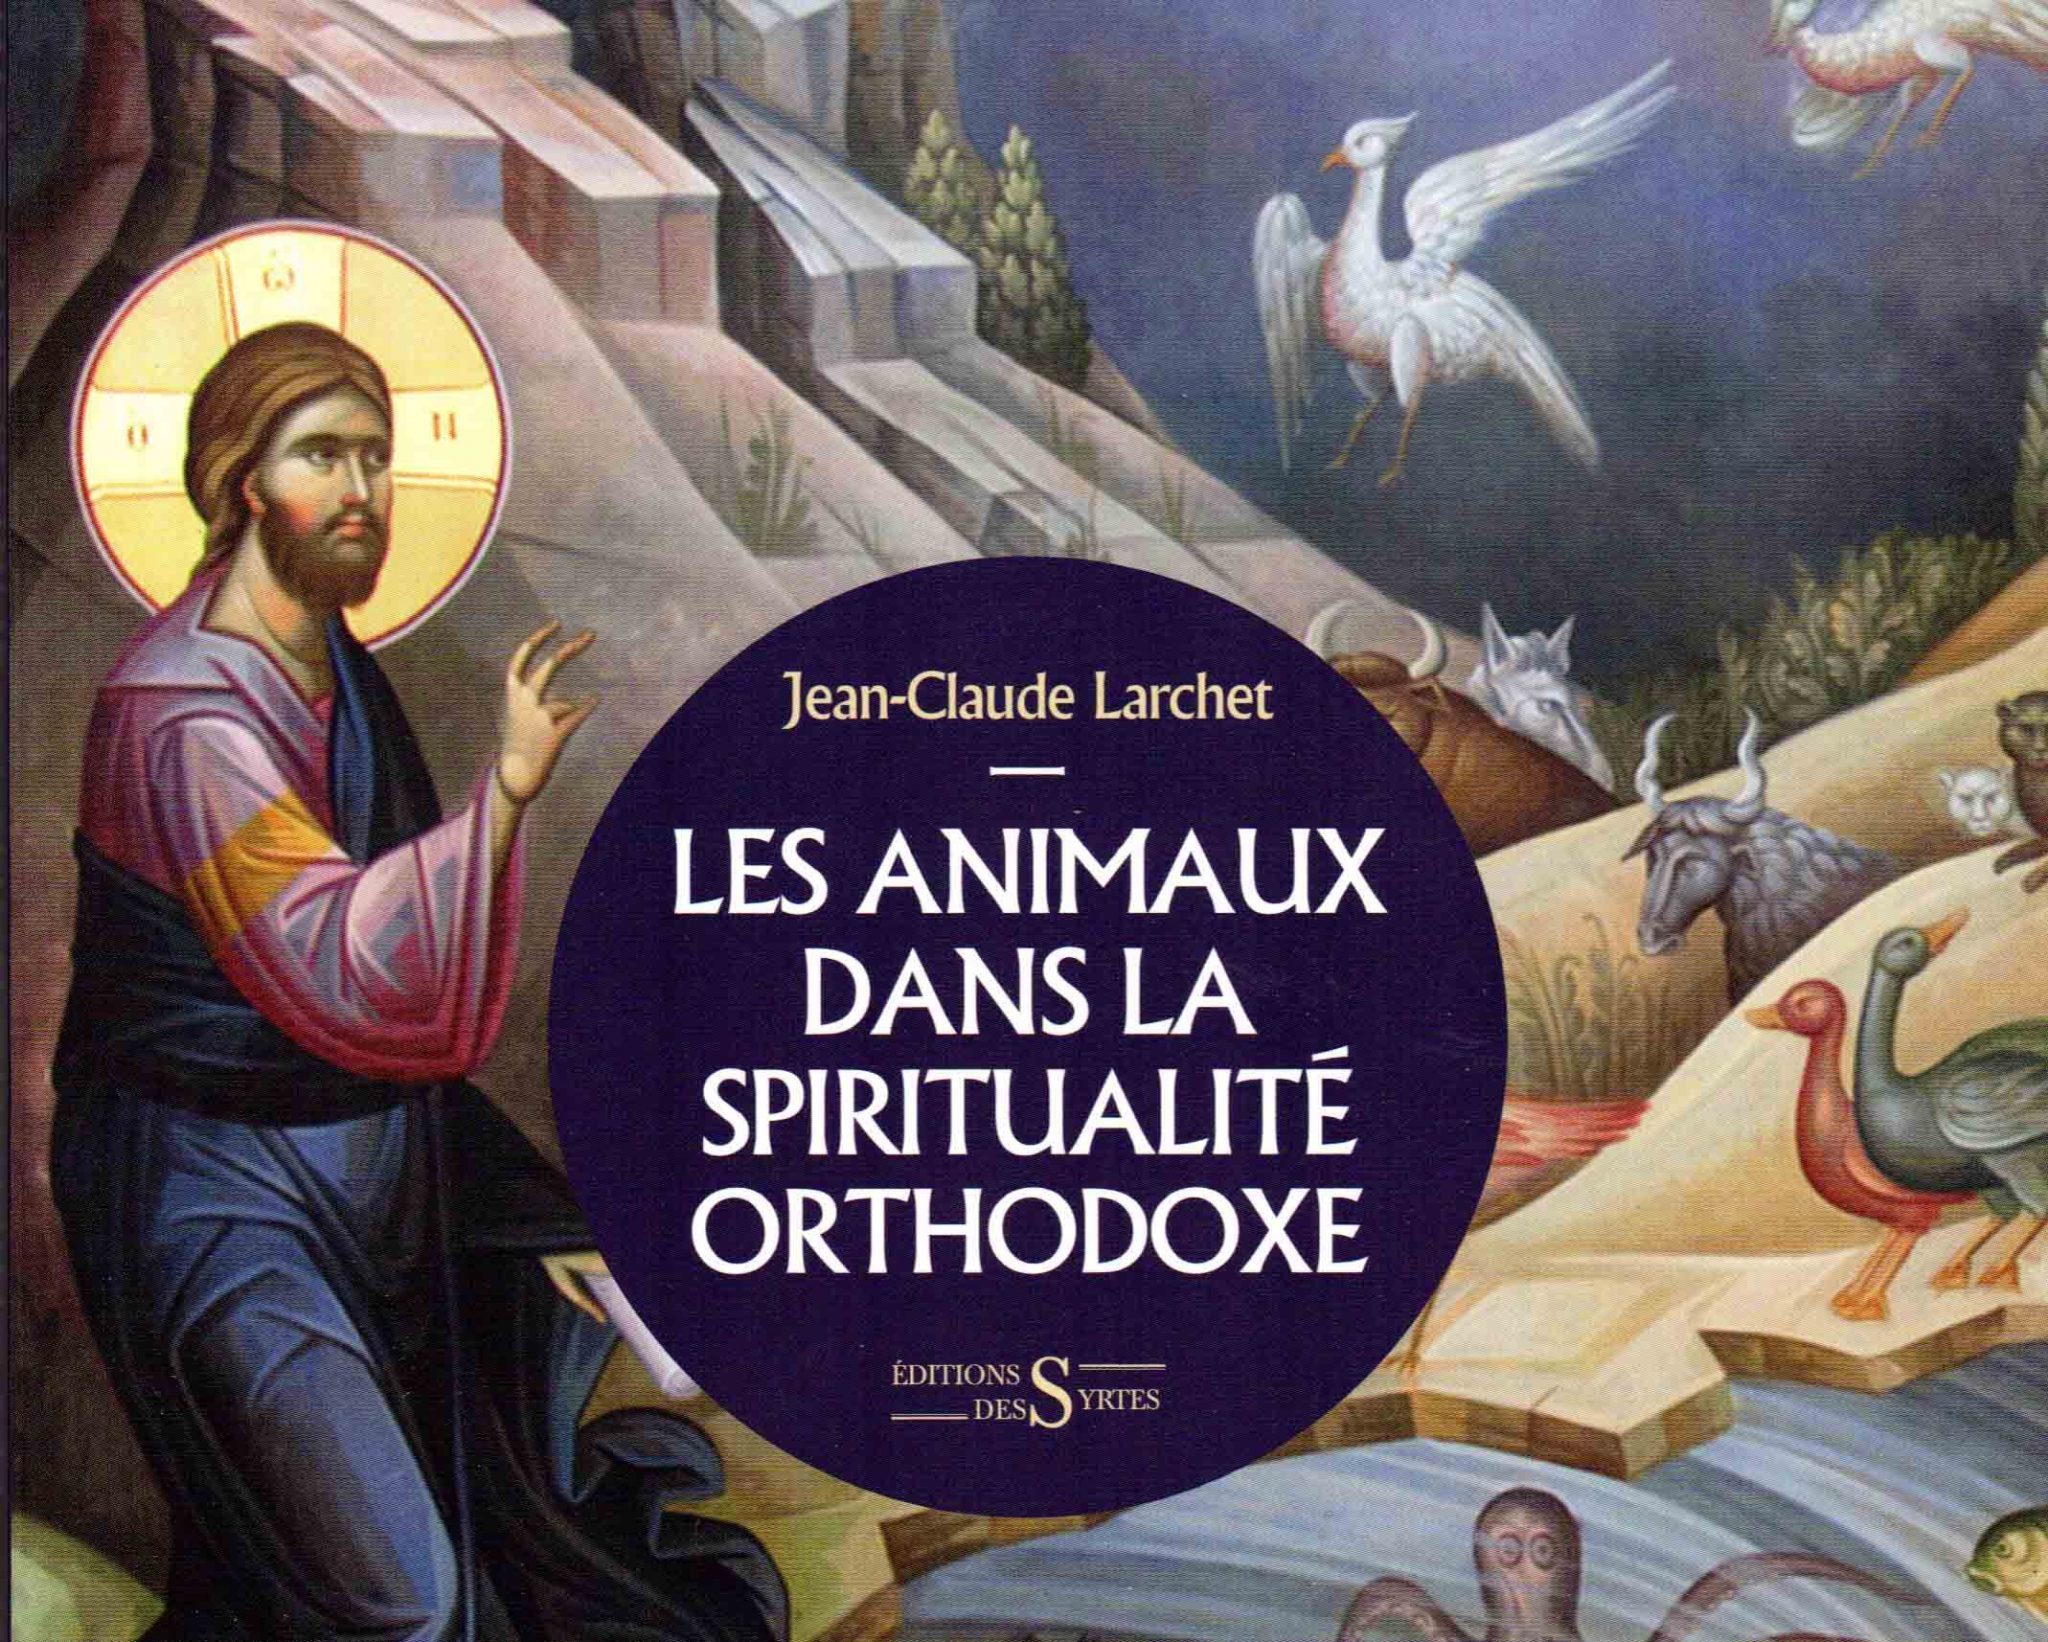 Recension: Jean-Claude Larchet, Les animaux dans la spiritualité orthodoxe